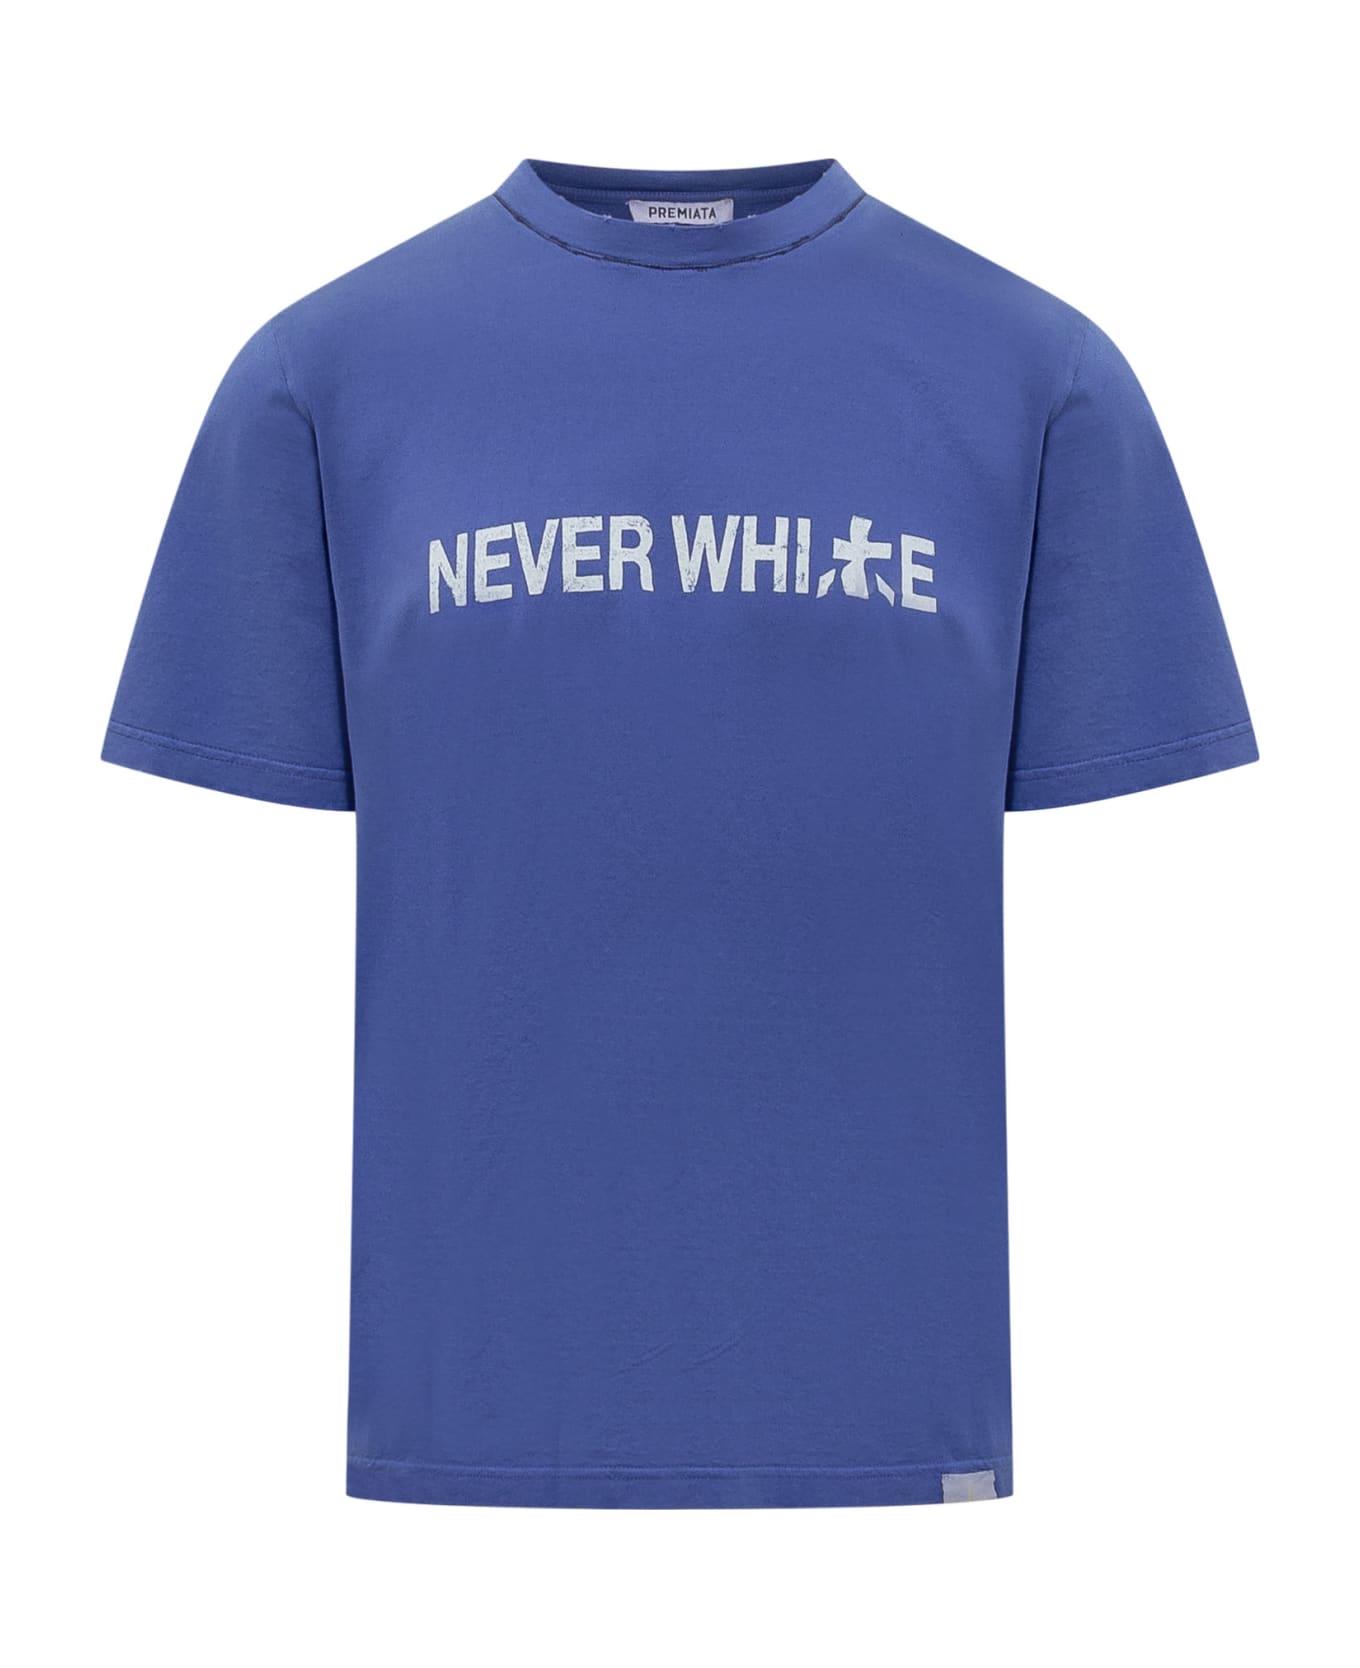 Premiata Neverwhite T-shirt - BLUE シャツ